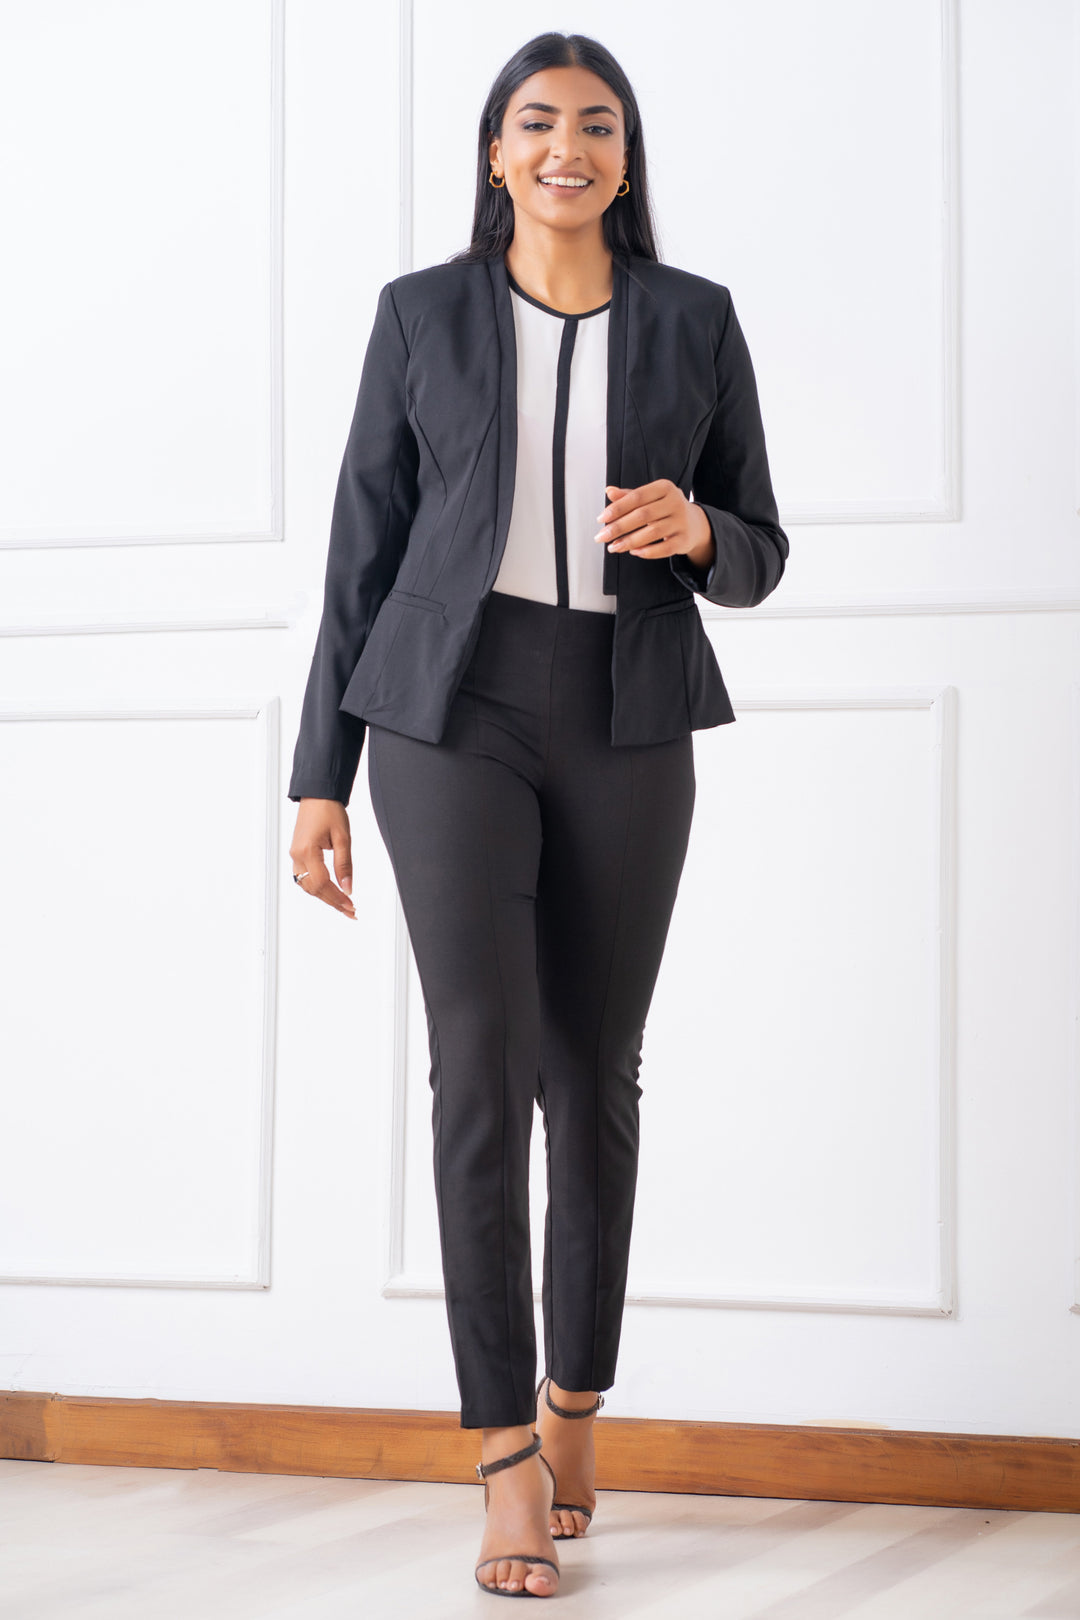 Open Lapel Blazer- Slim Fit, Jacket, Blazer, Long Sleeves, New Arrivals, Office Jackets, Slim Fit, Work Top, workwear - MONDY, Sri Lankan women's clothing office wear party dresses jackets pa